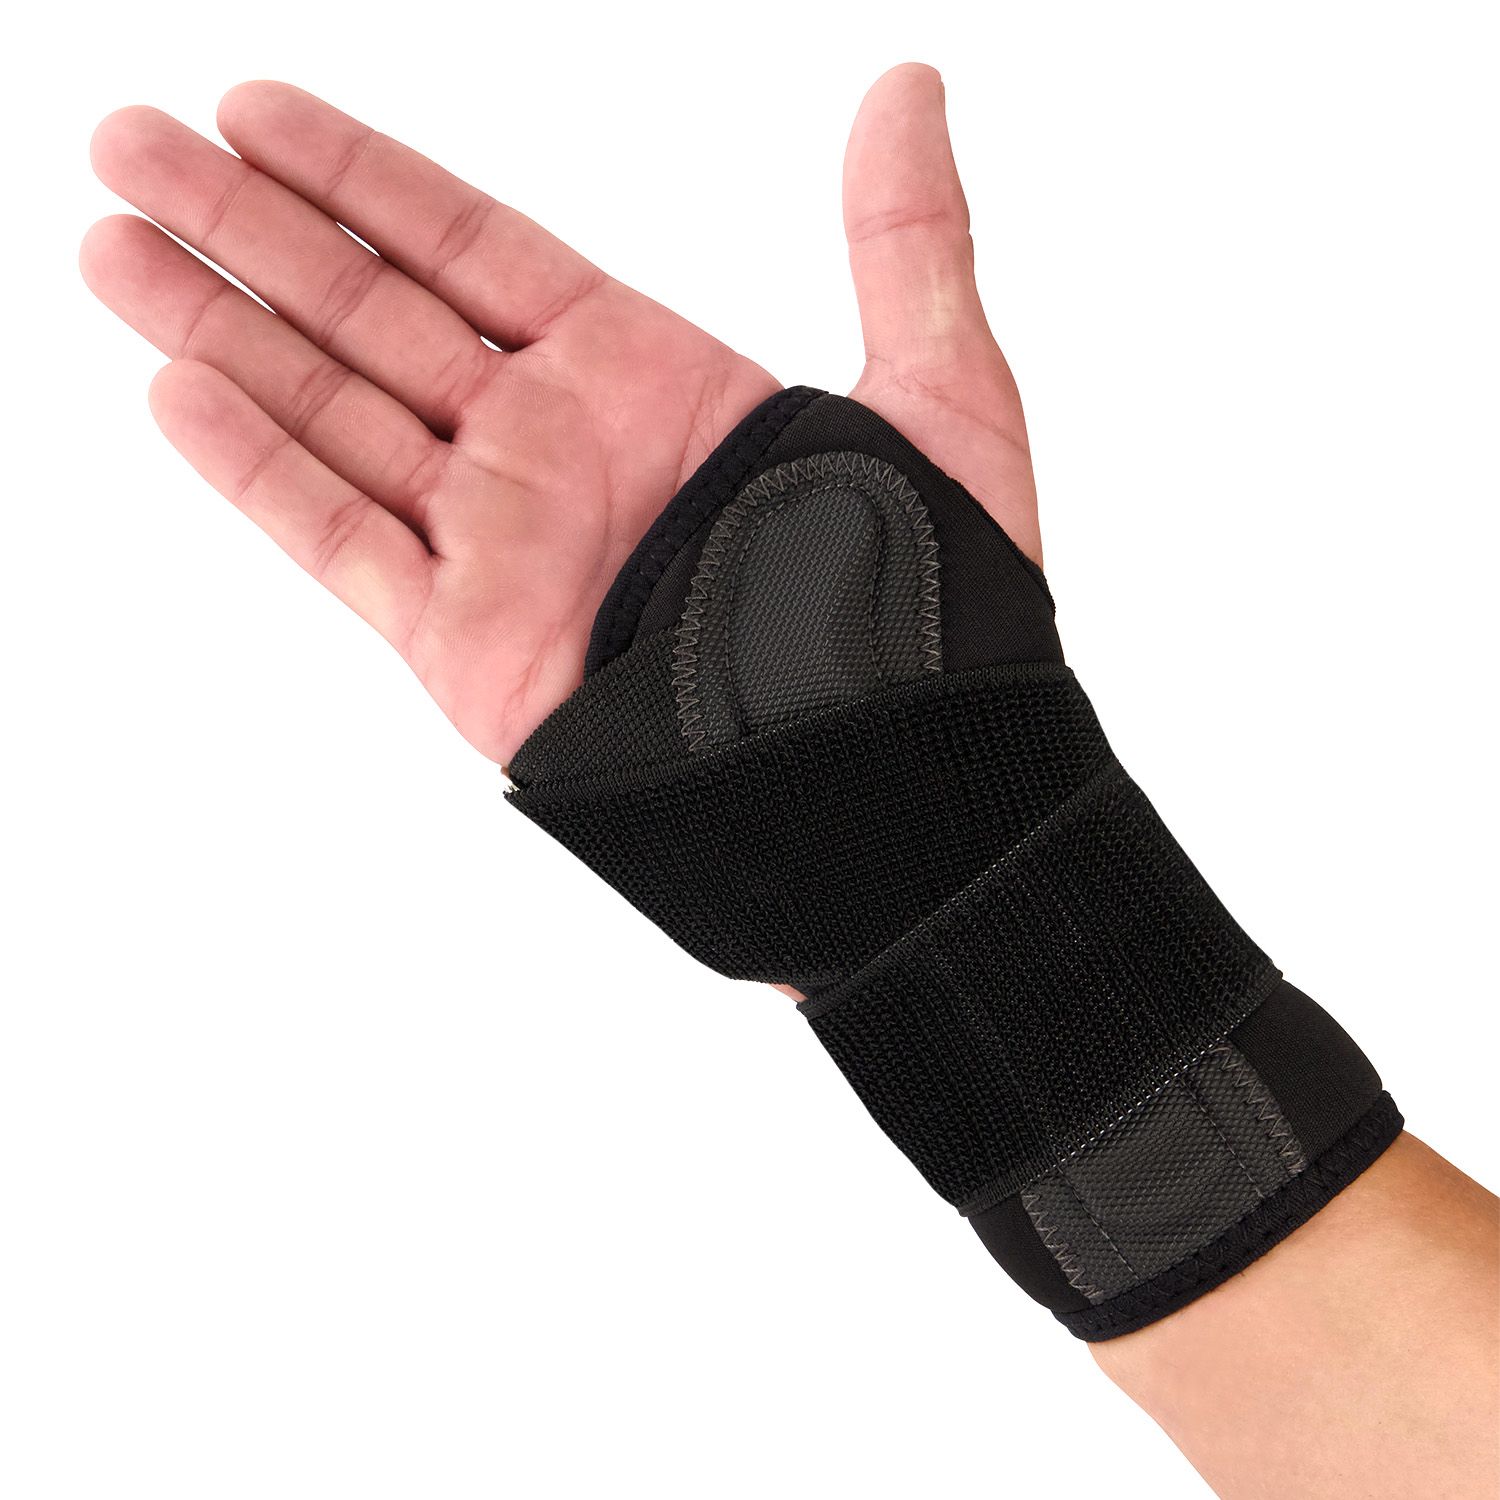 novamed lightweight wrist support inside of left hand